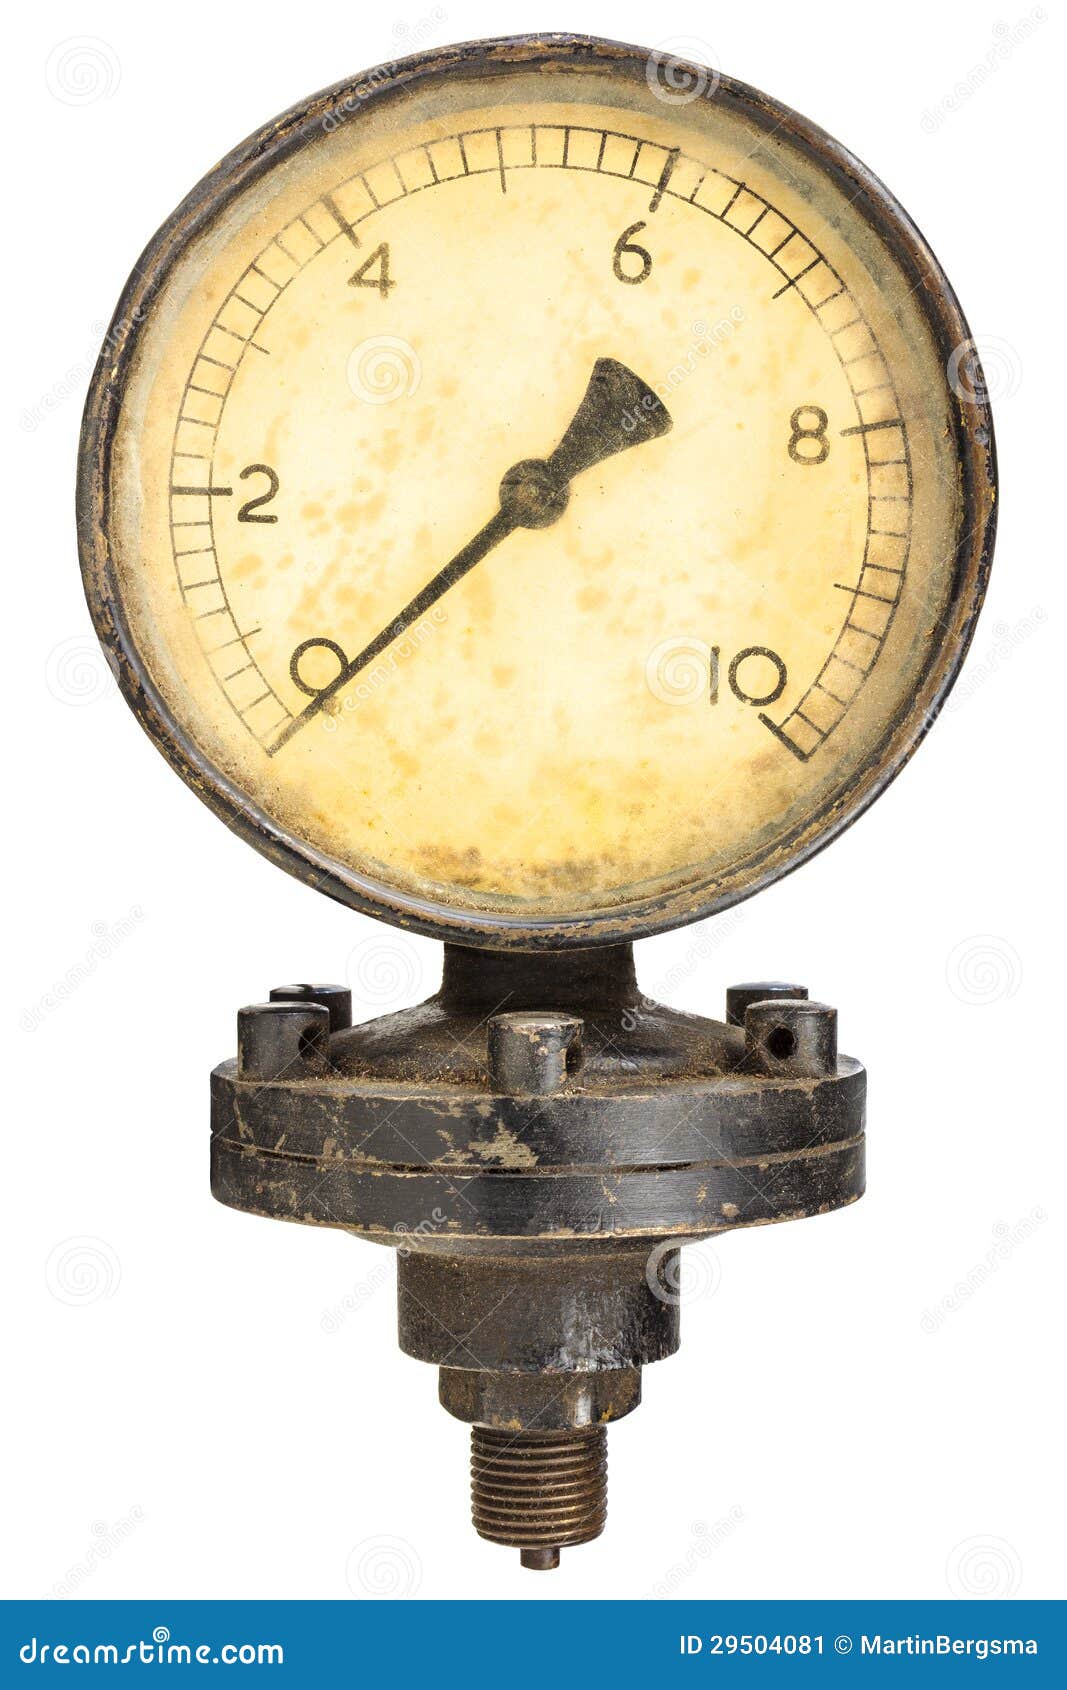 old industry display mano meter